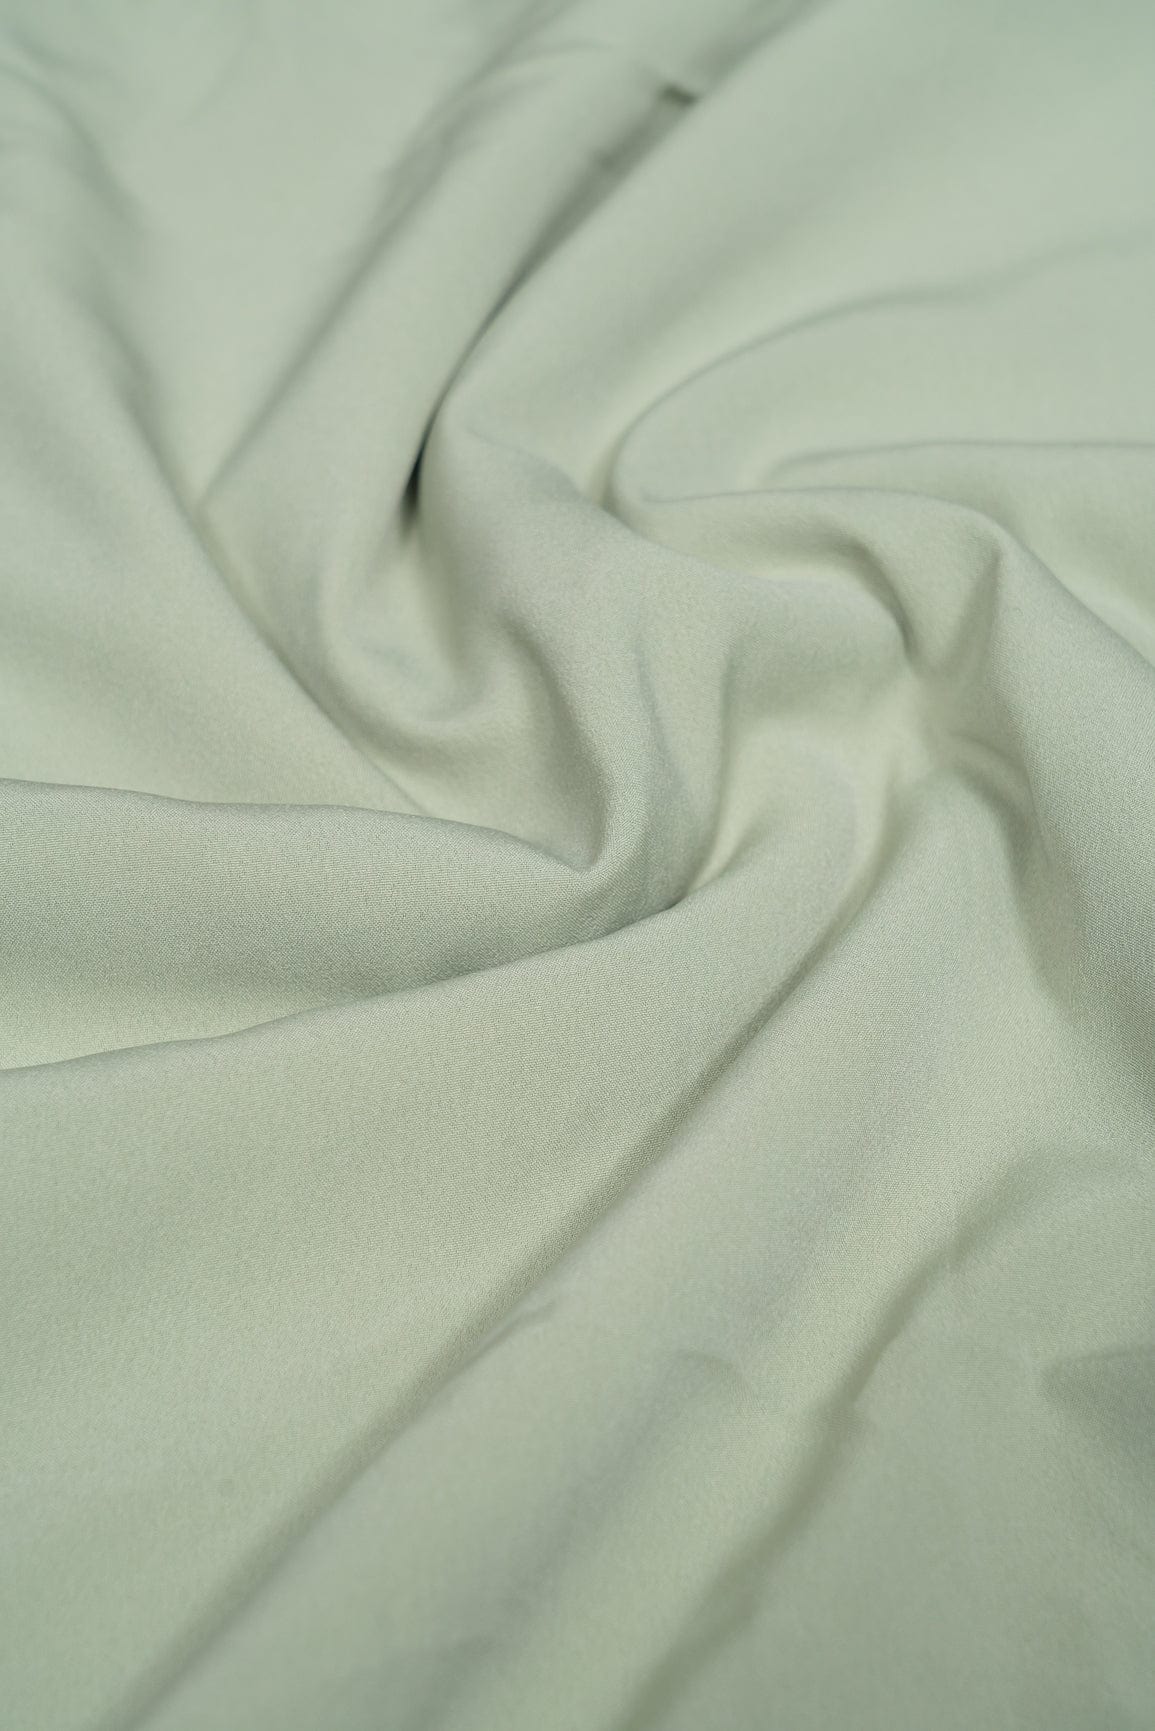 doeraa Plain Fabrics Olive  Dyed Crepe Fabric